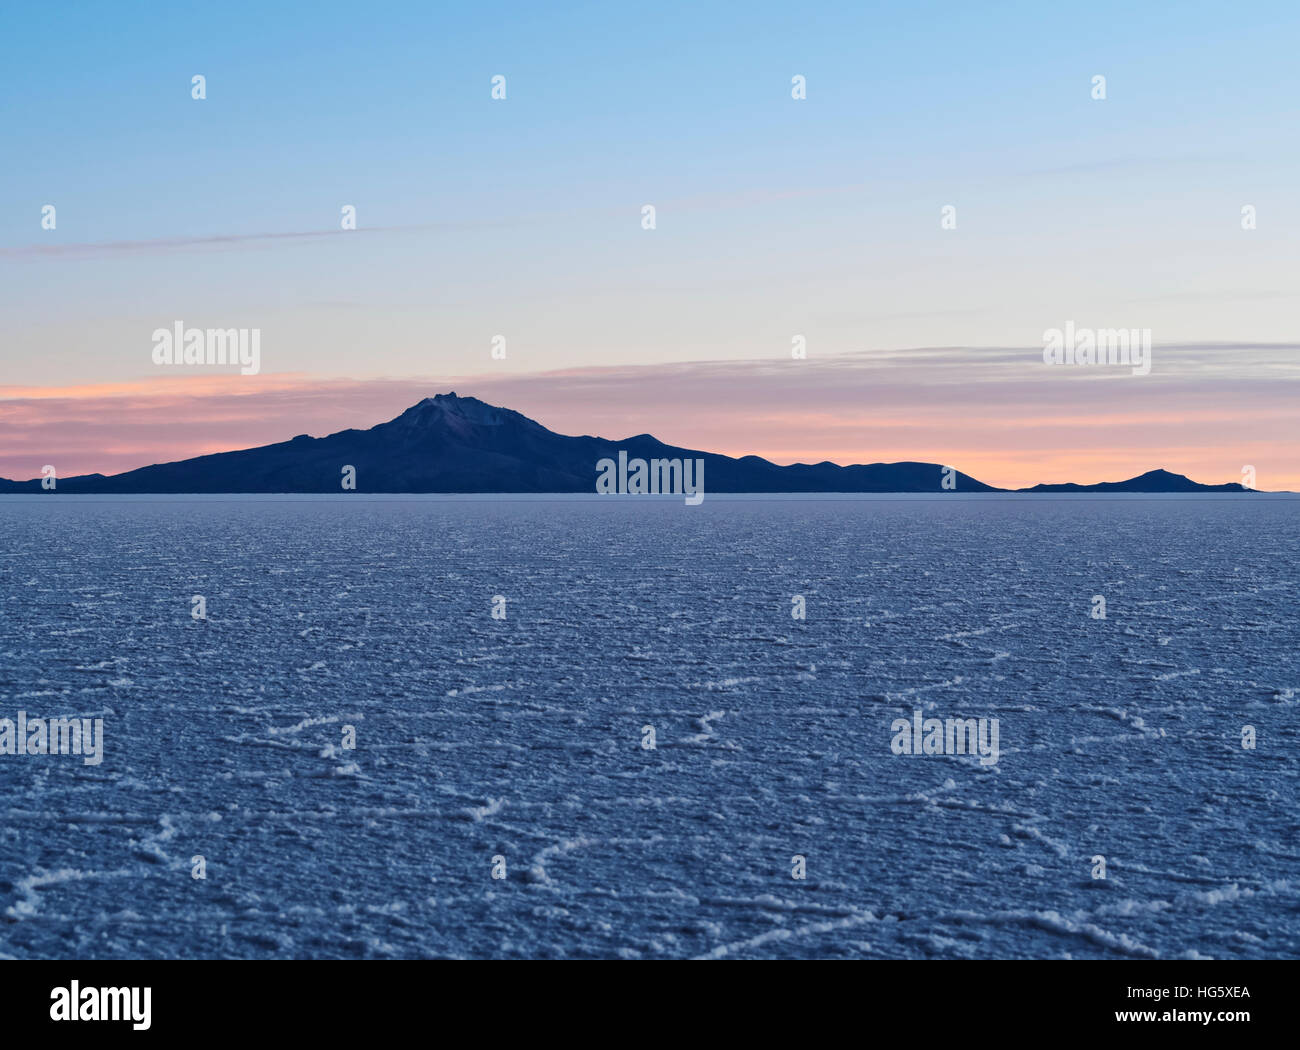 La Bolivie, Potosi, Daniel Campos Province, vue sur le Salar de Uyuni, le plus grand de sel dans le monde au lever du soleil. Banque D'Images